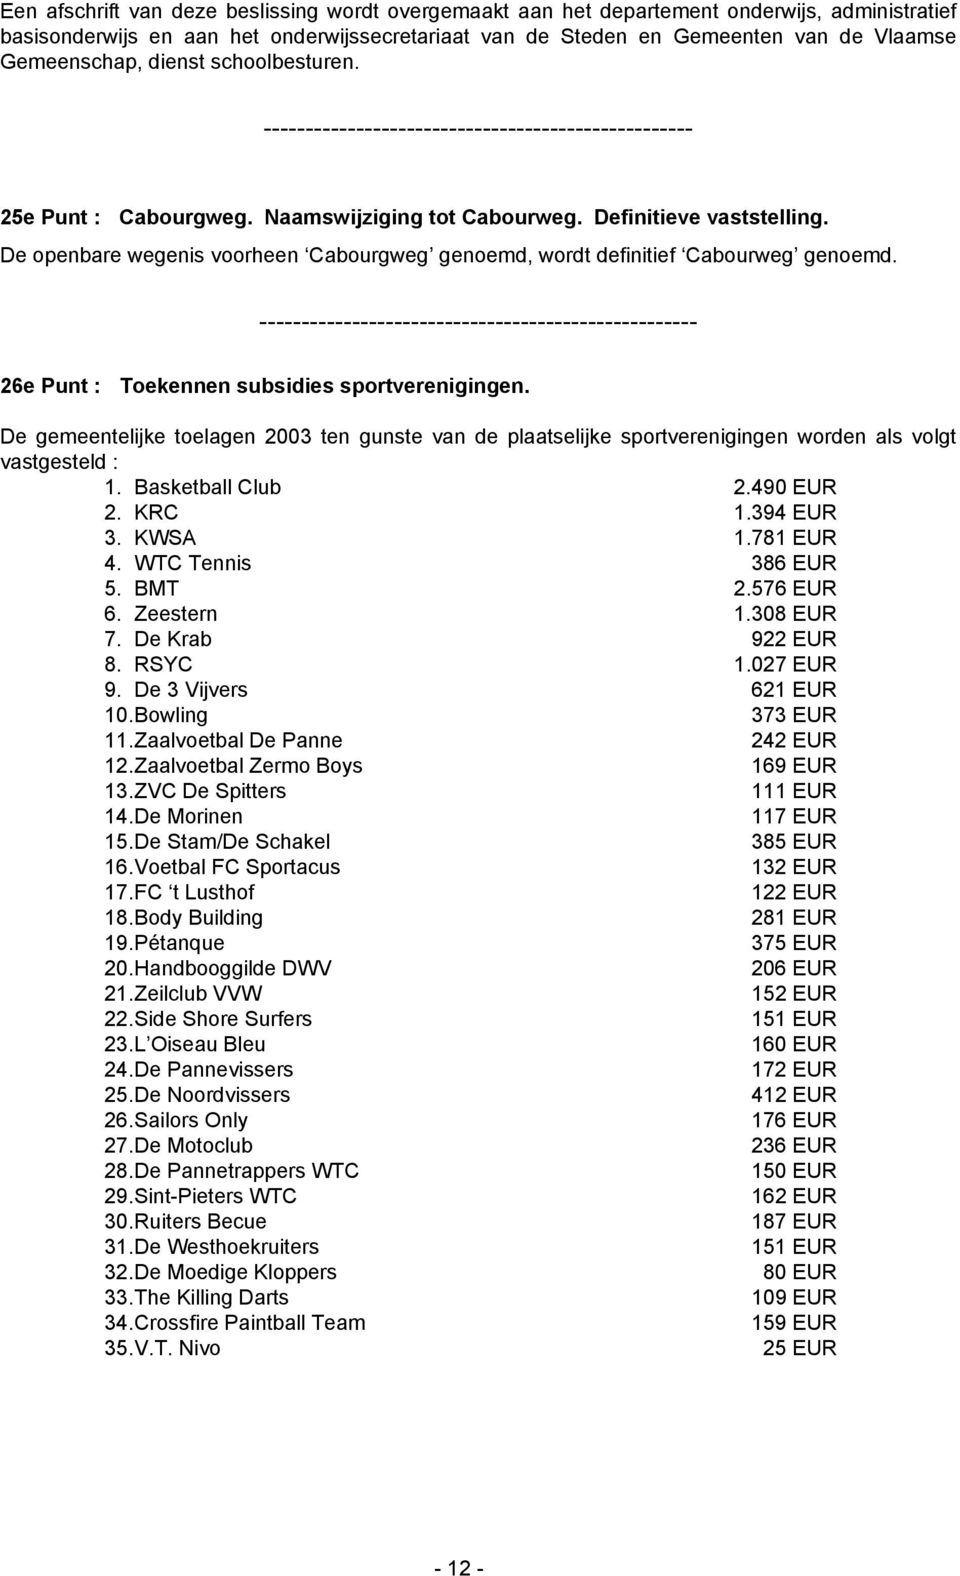 26e Punt : Toekennen subsidies sportverenigingen. De gemeentelijke toelagen 2003 ten gunste van de plaatselijke sportverenigingen worden als volgt vastgesteld : 1. Basketball Club 2.490 EUR 2. KRC 1.